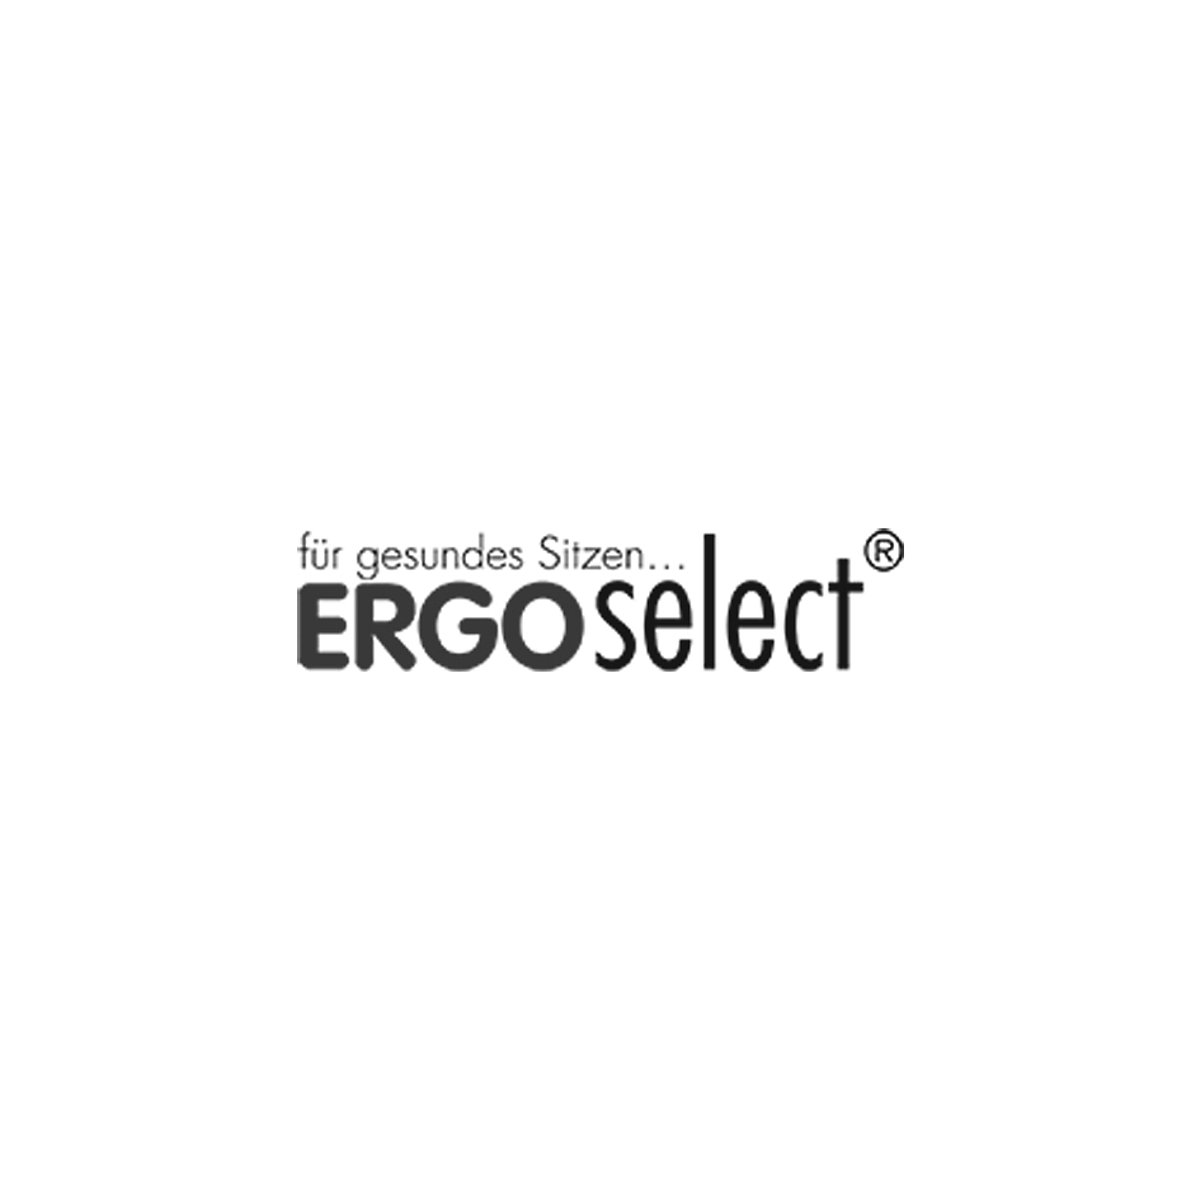 ERGO select Markenlogo himolla